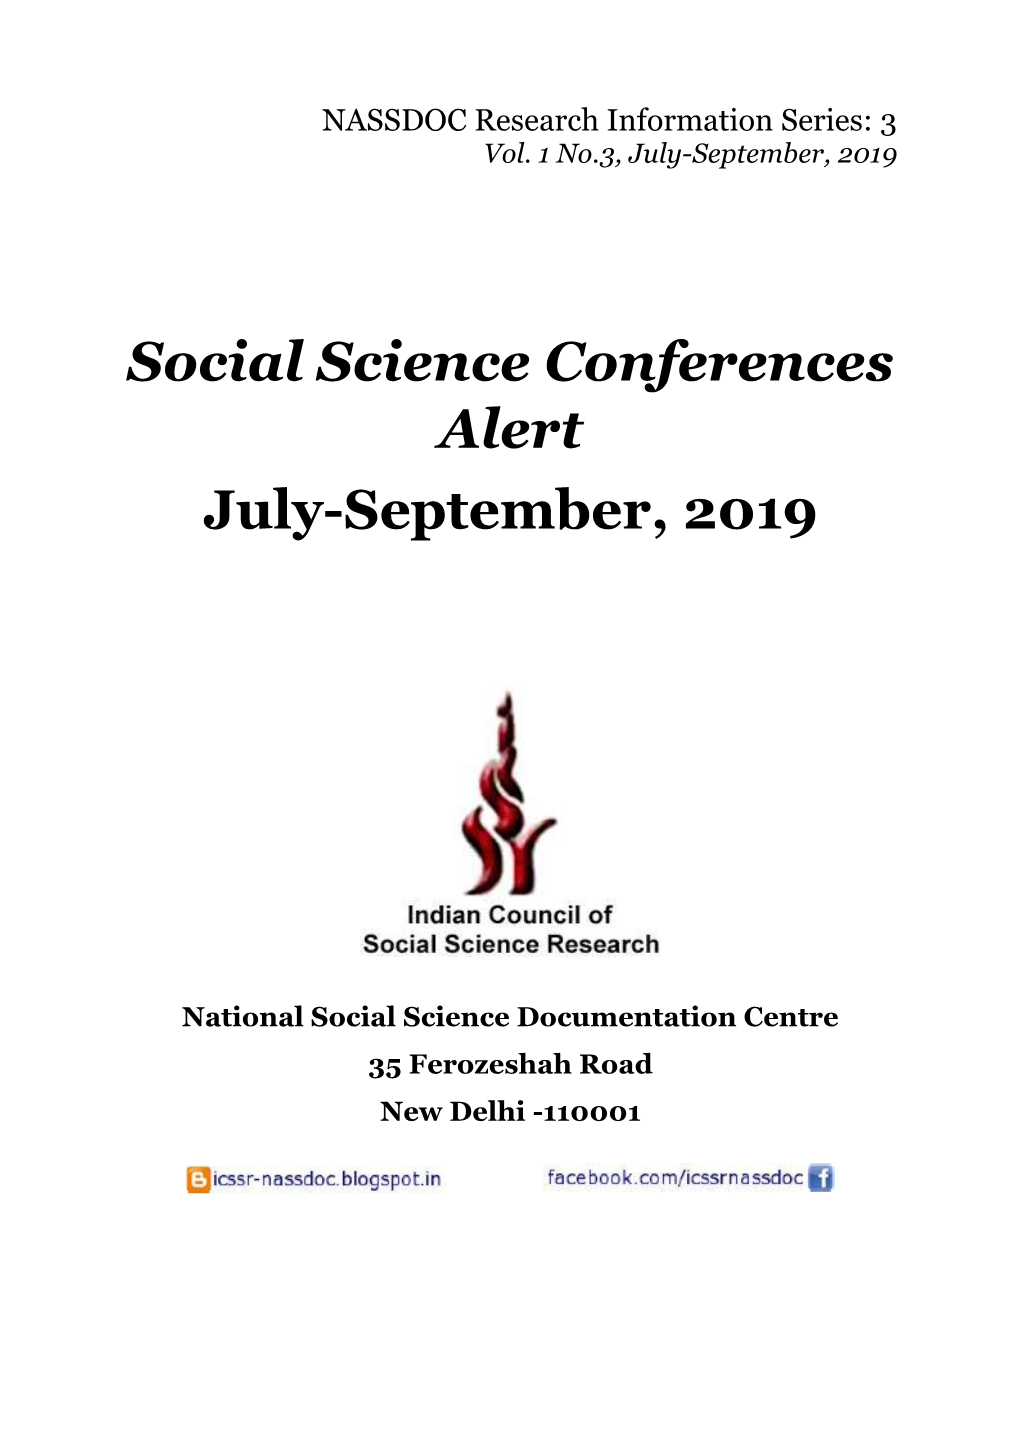 Social Science Conferences Alert July-September, 2019